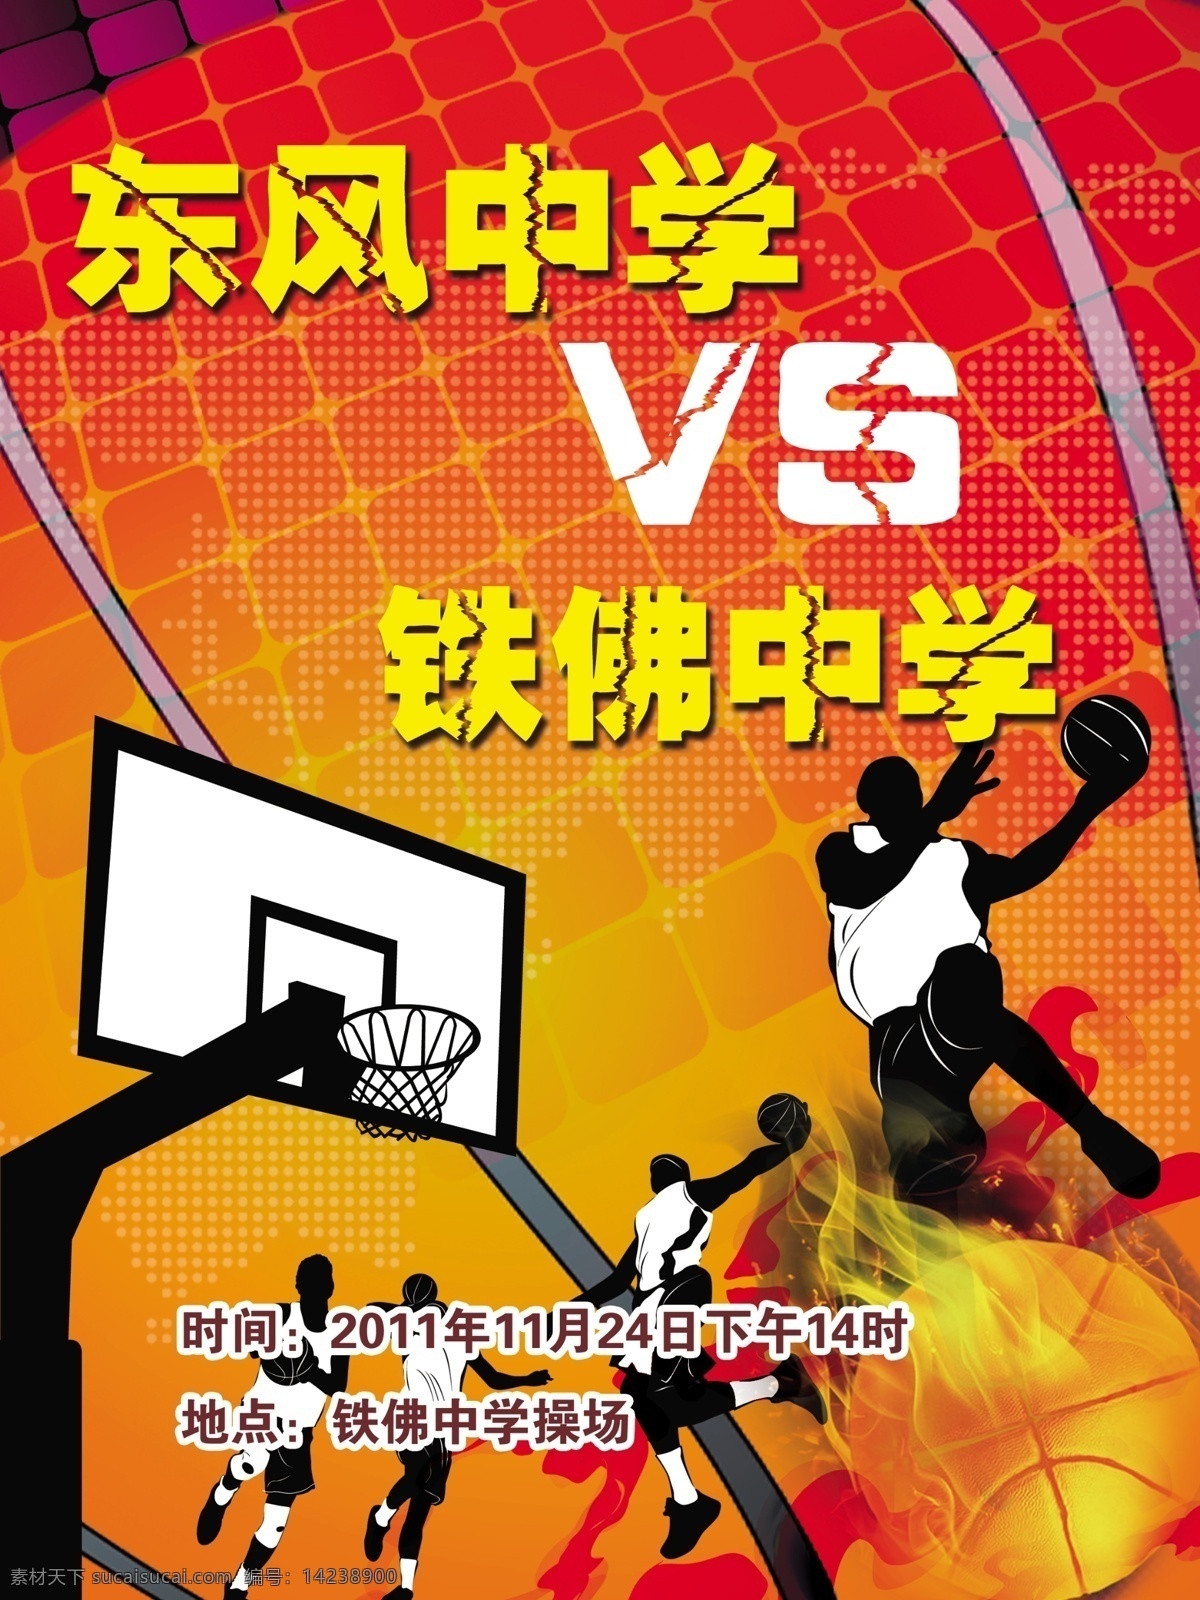 篮球赛海报 海报 篮球赛 篮球 篮球杆 底纹 黄色 红色 打篮球 运动员 篮球框 广告设计模板 源文件